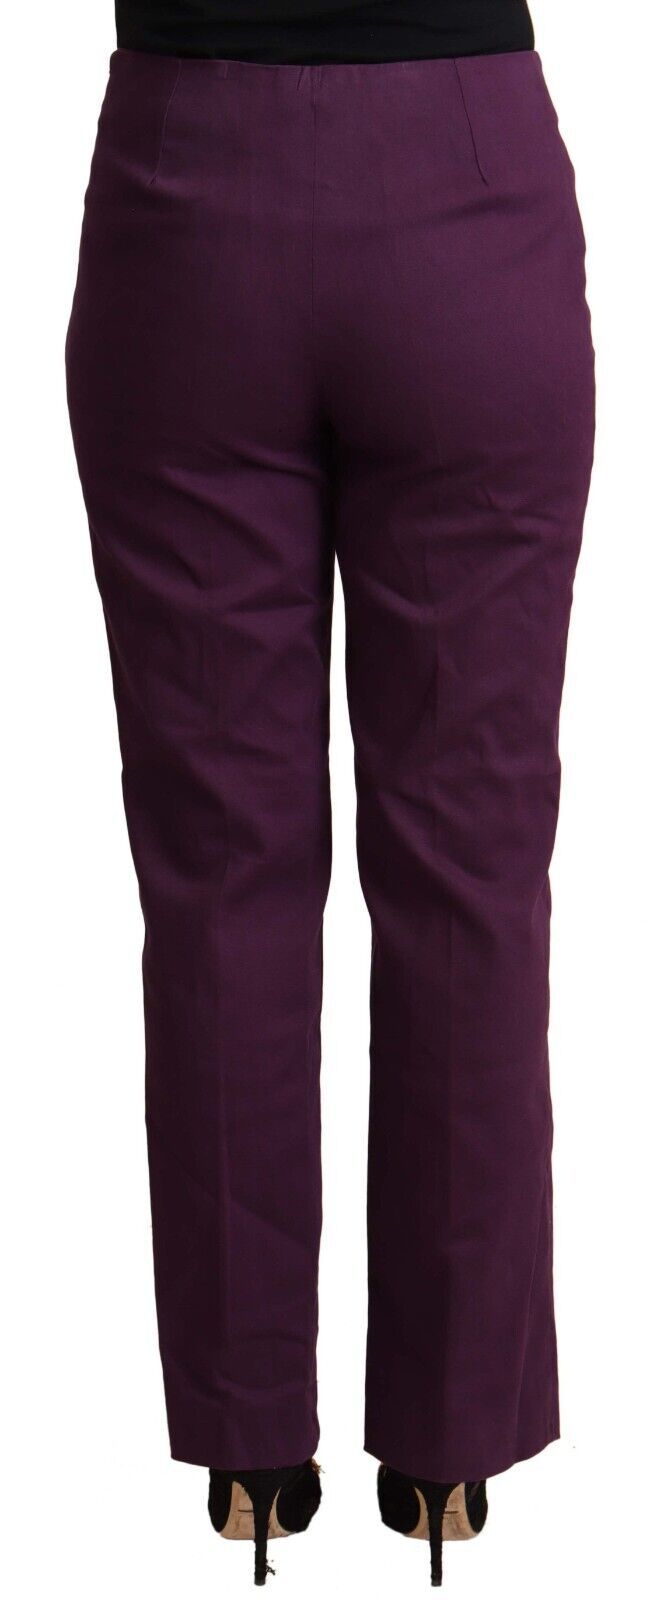 Elegant Violet High Waist Tapered Pants